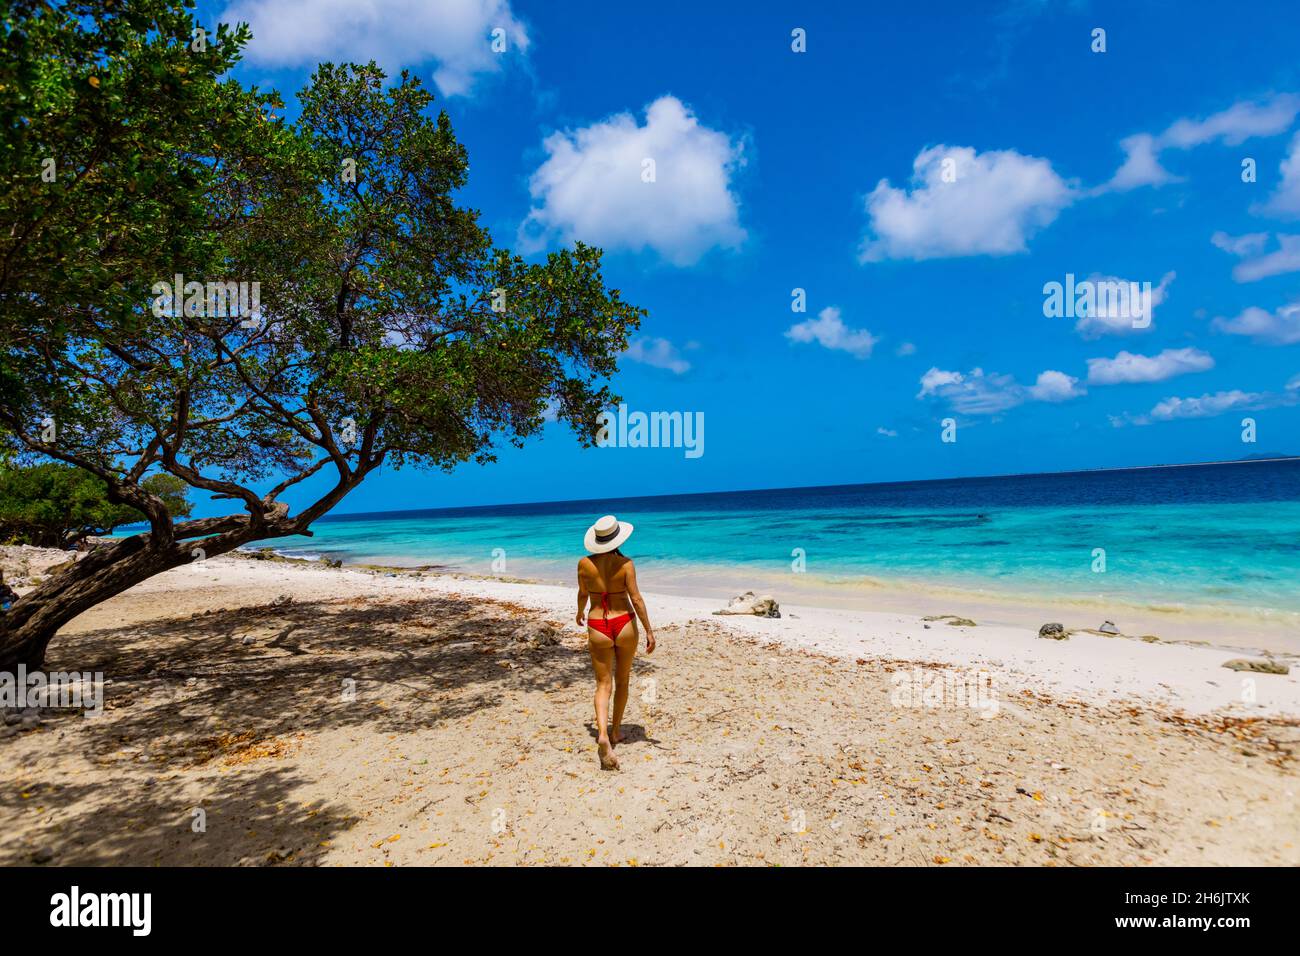 Mujer disfrutando de las playas de arena blanca y aguas azules claras de Bonaire, Antillas Holandesas, Caribe, Centroamérica Foto de stock